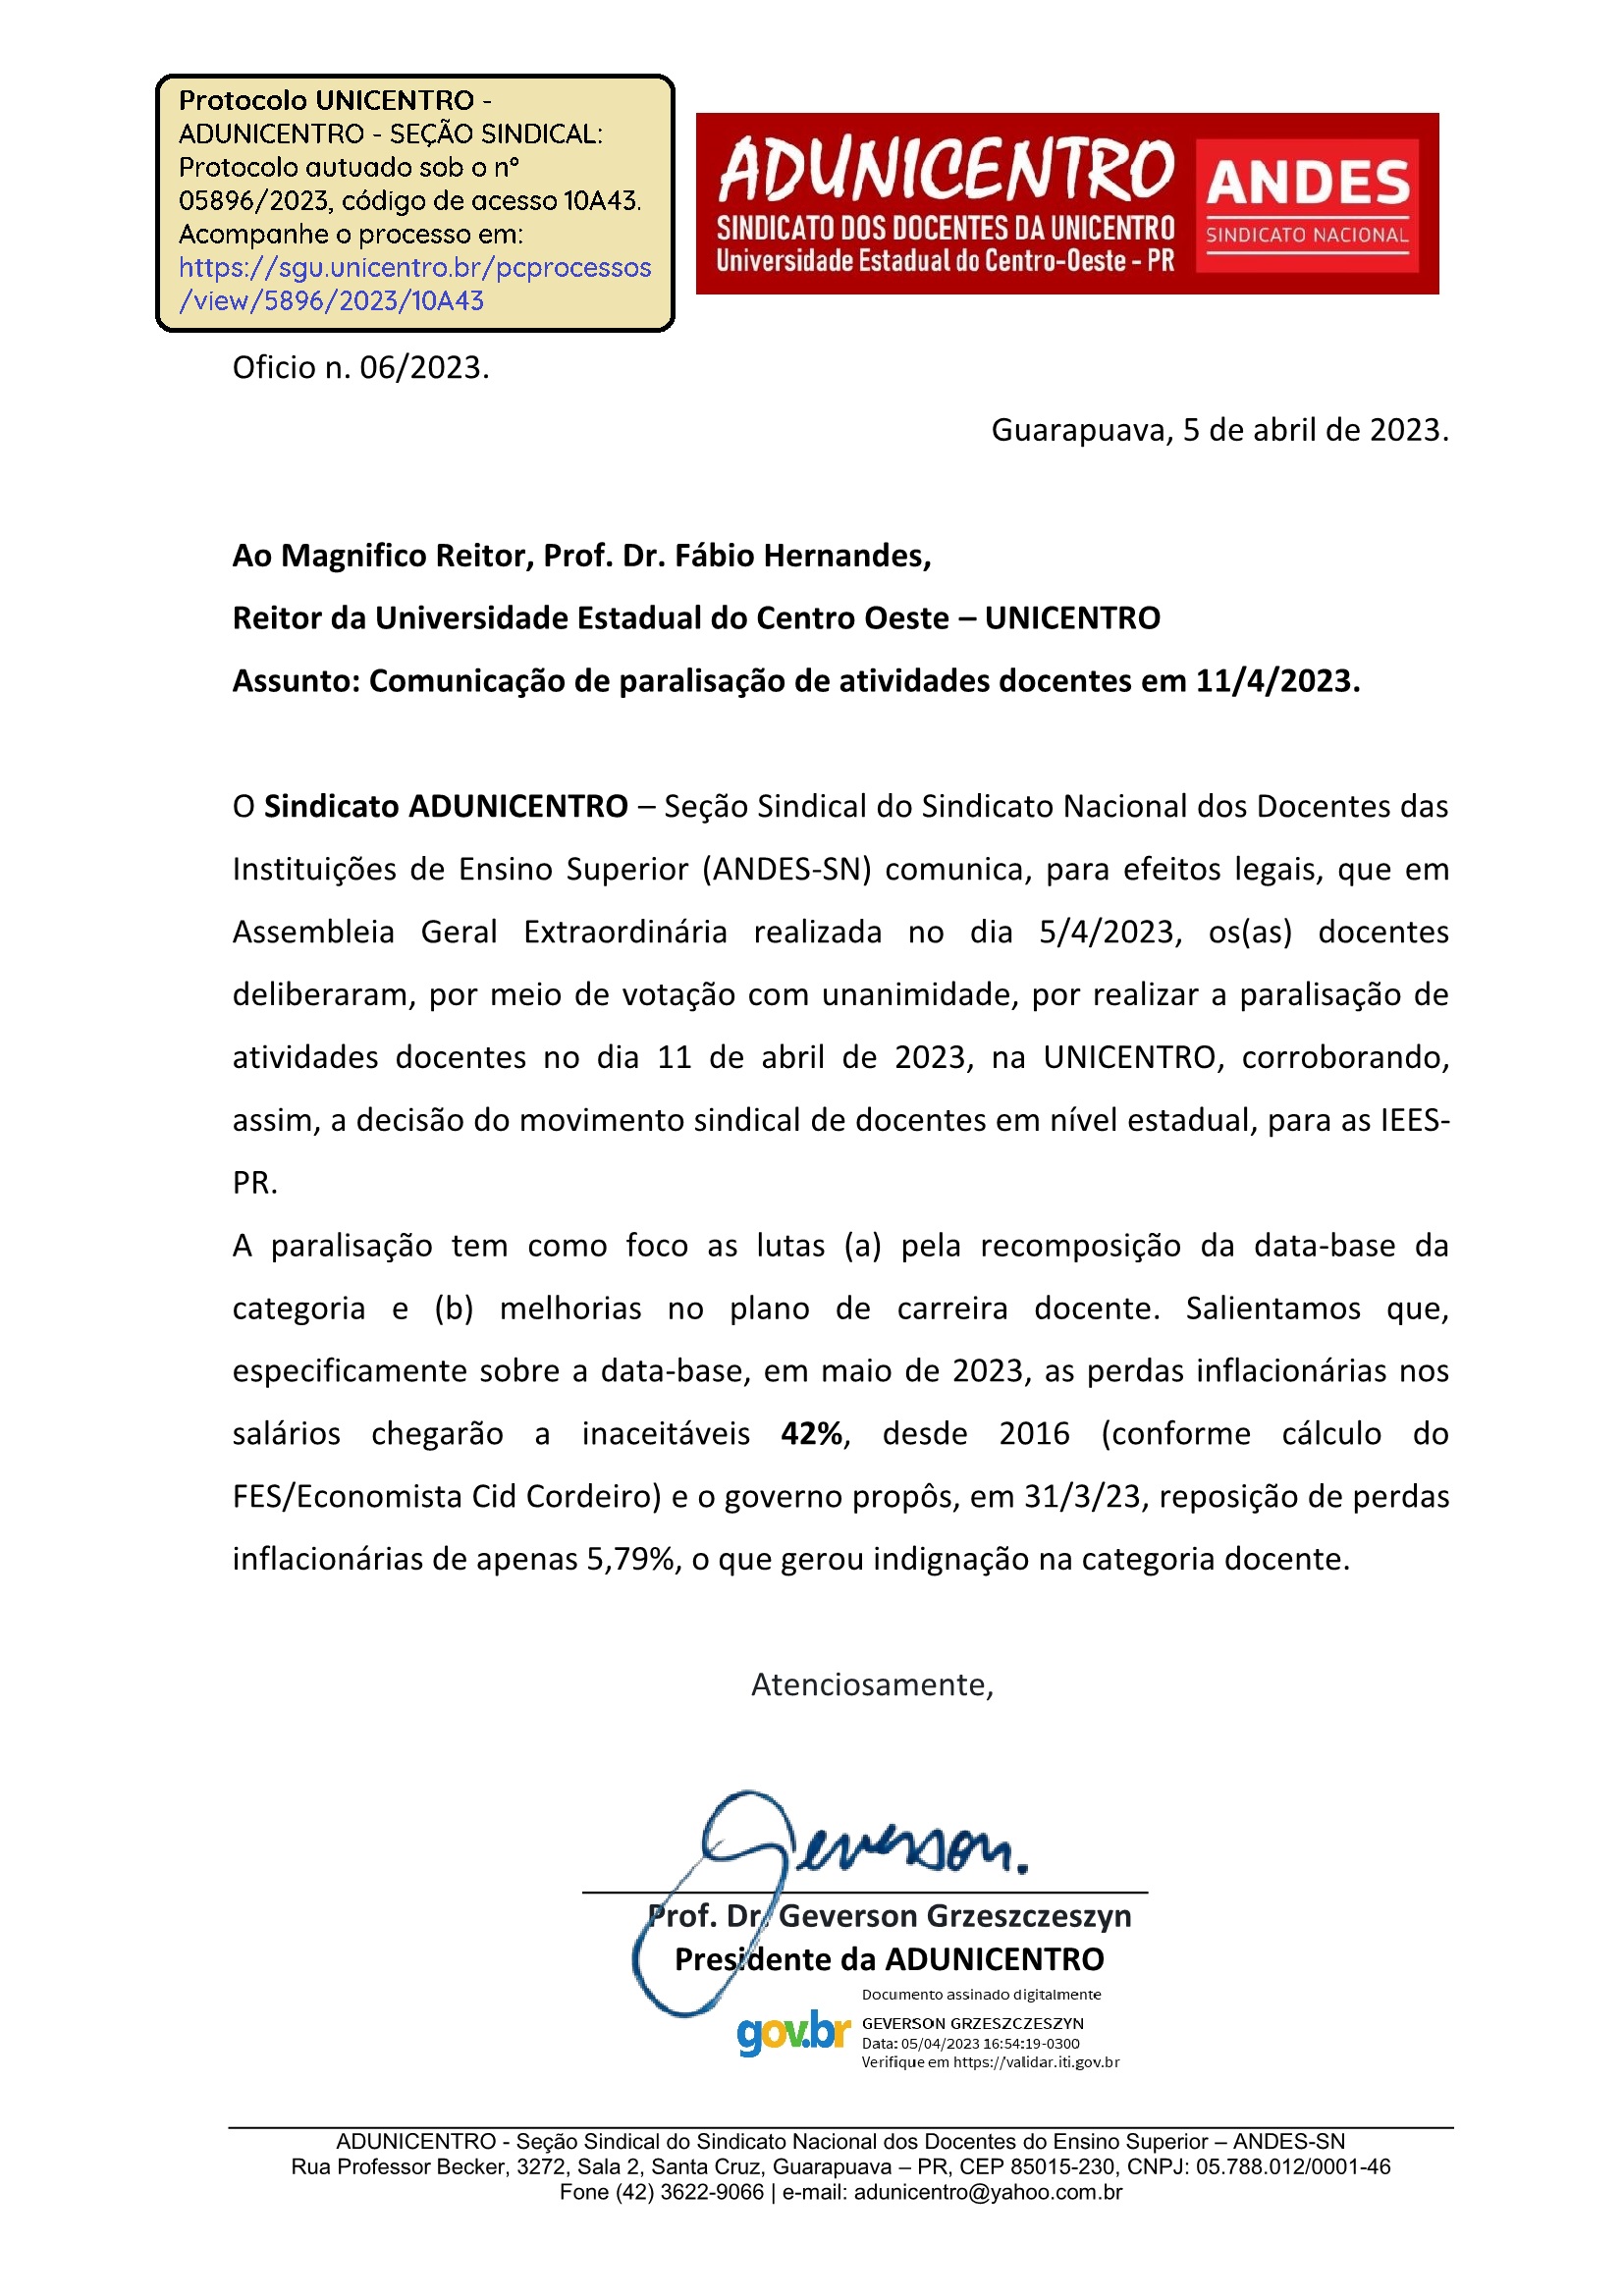 Assunto: Comunicação de paralisação de atividades docentes em 11/4/2023.